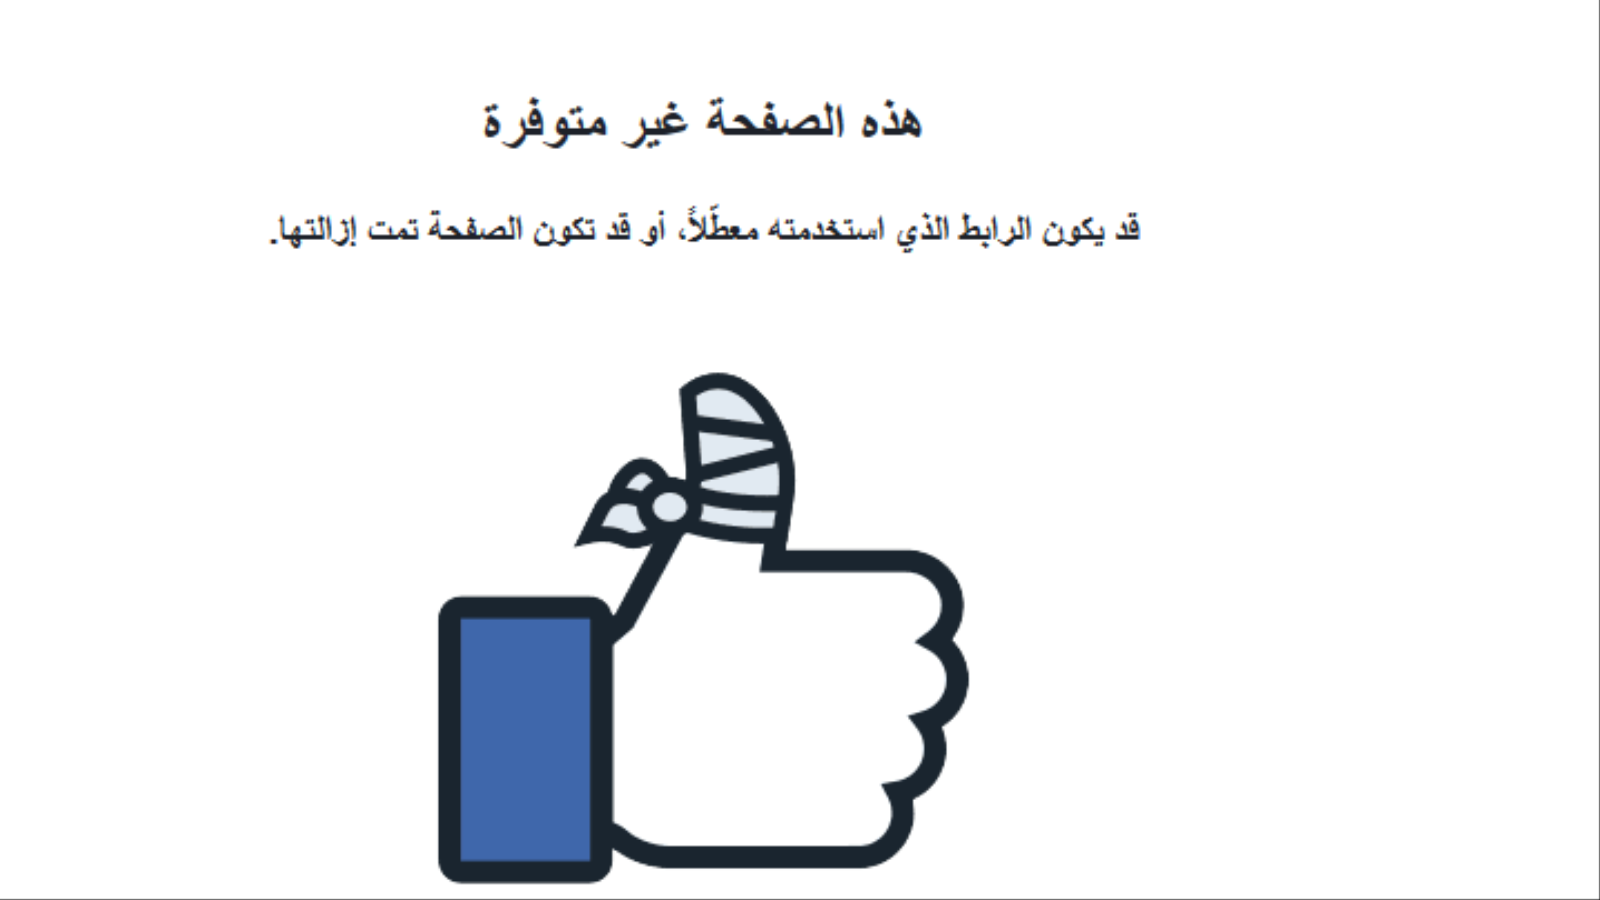 صفحة وكالة صفا الإخبارية بعد حذفها من قبل فيسبوك (مواقع التواصل الاجتماعي)